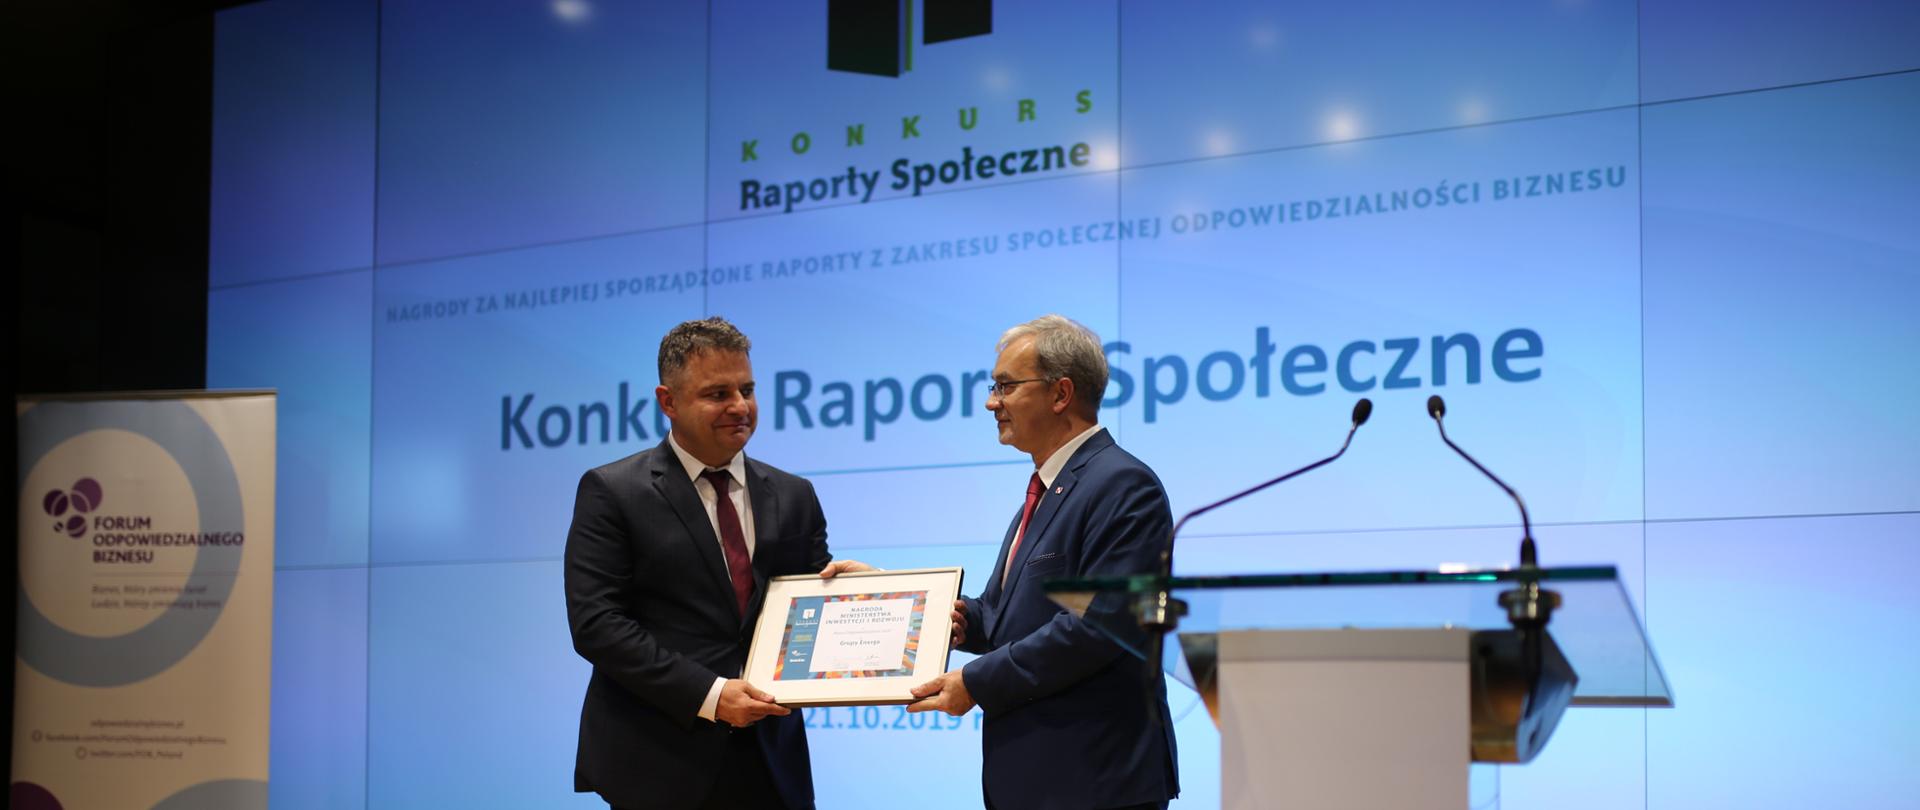 Minister Jerzy Kwieciński wręcza dyplom przedstawicielowi formy Enea. W tle wyświetlony jest napis "Konkurs Raporty Społeczne"